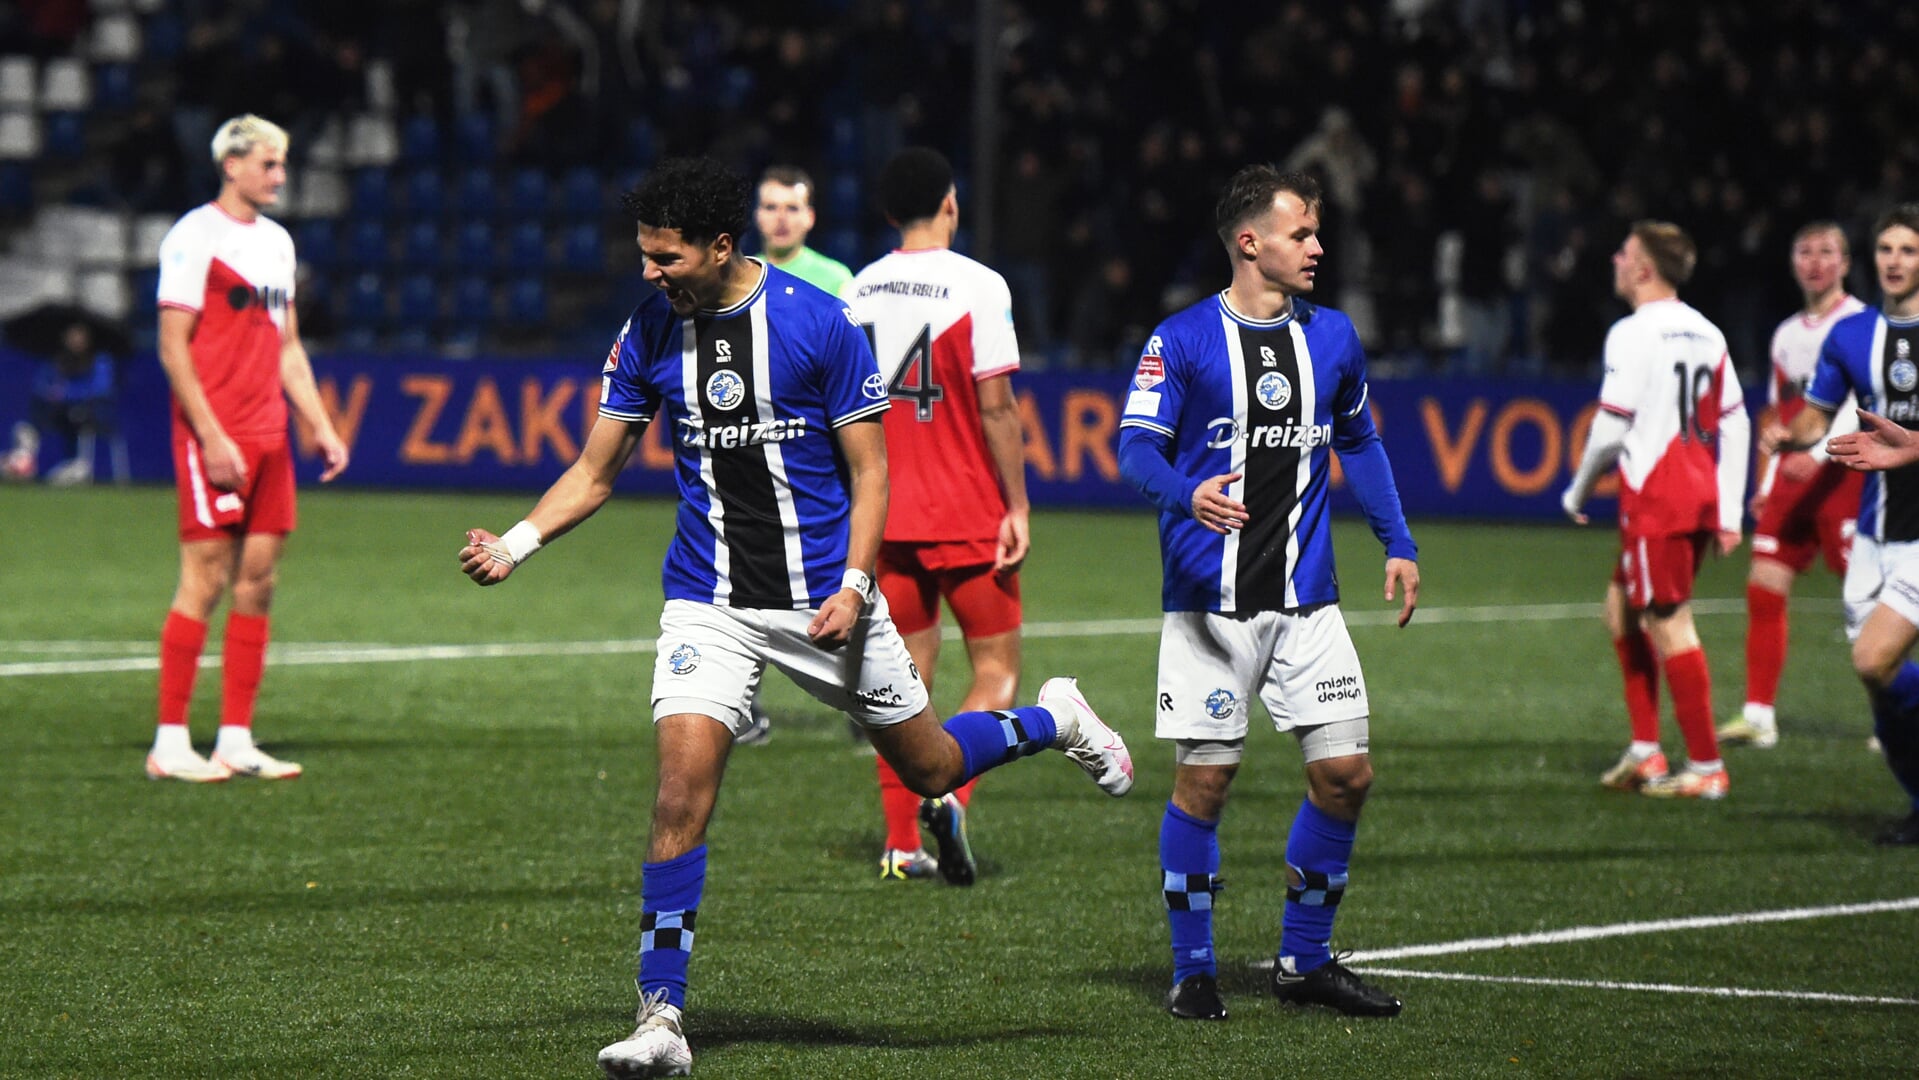 Ontlading bij Ilias Boumassaoudi na zijn 1-0 in de thuiswedstrijd tegen Jong FC Utrecht. De ontmoeting eindigde uiteindelijk in 1-1.